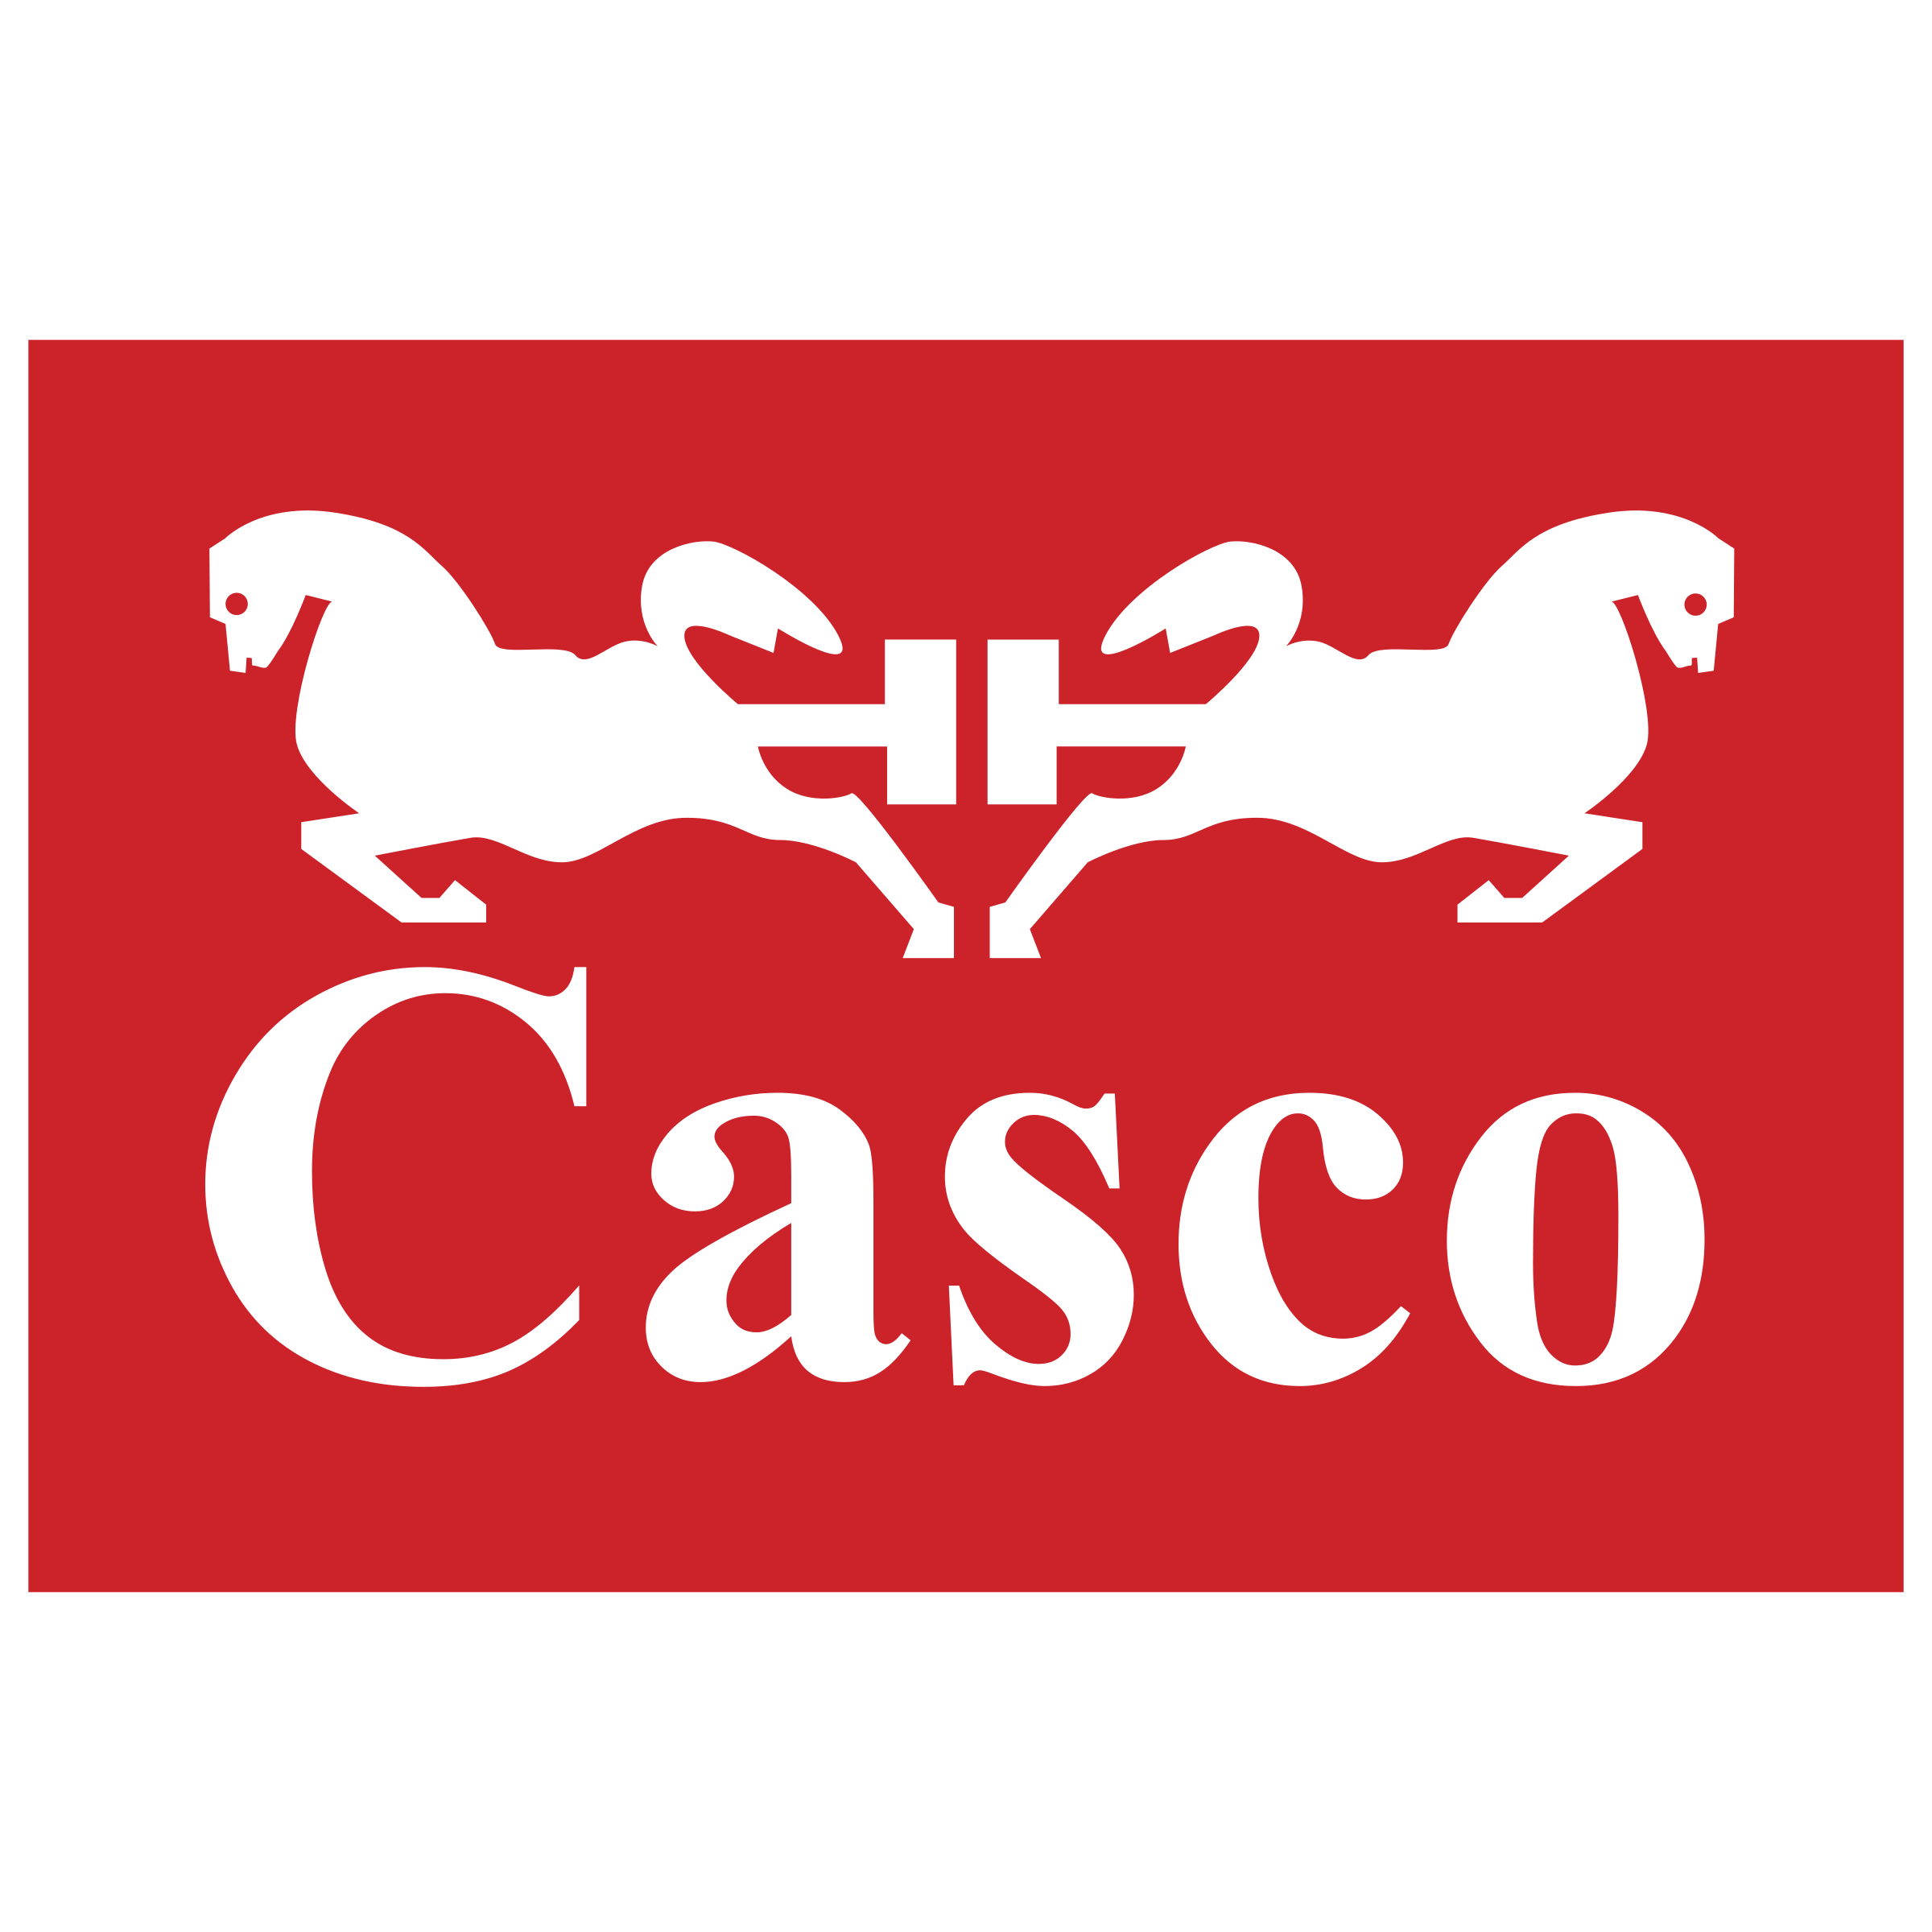 Casco Logo - Casco Logo PNG Transparent & SVG Vector - Freebie Supply